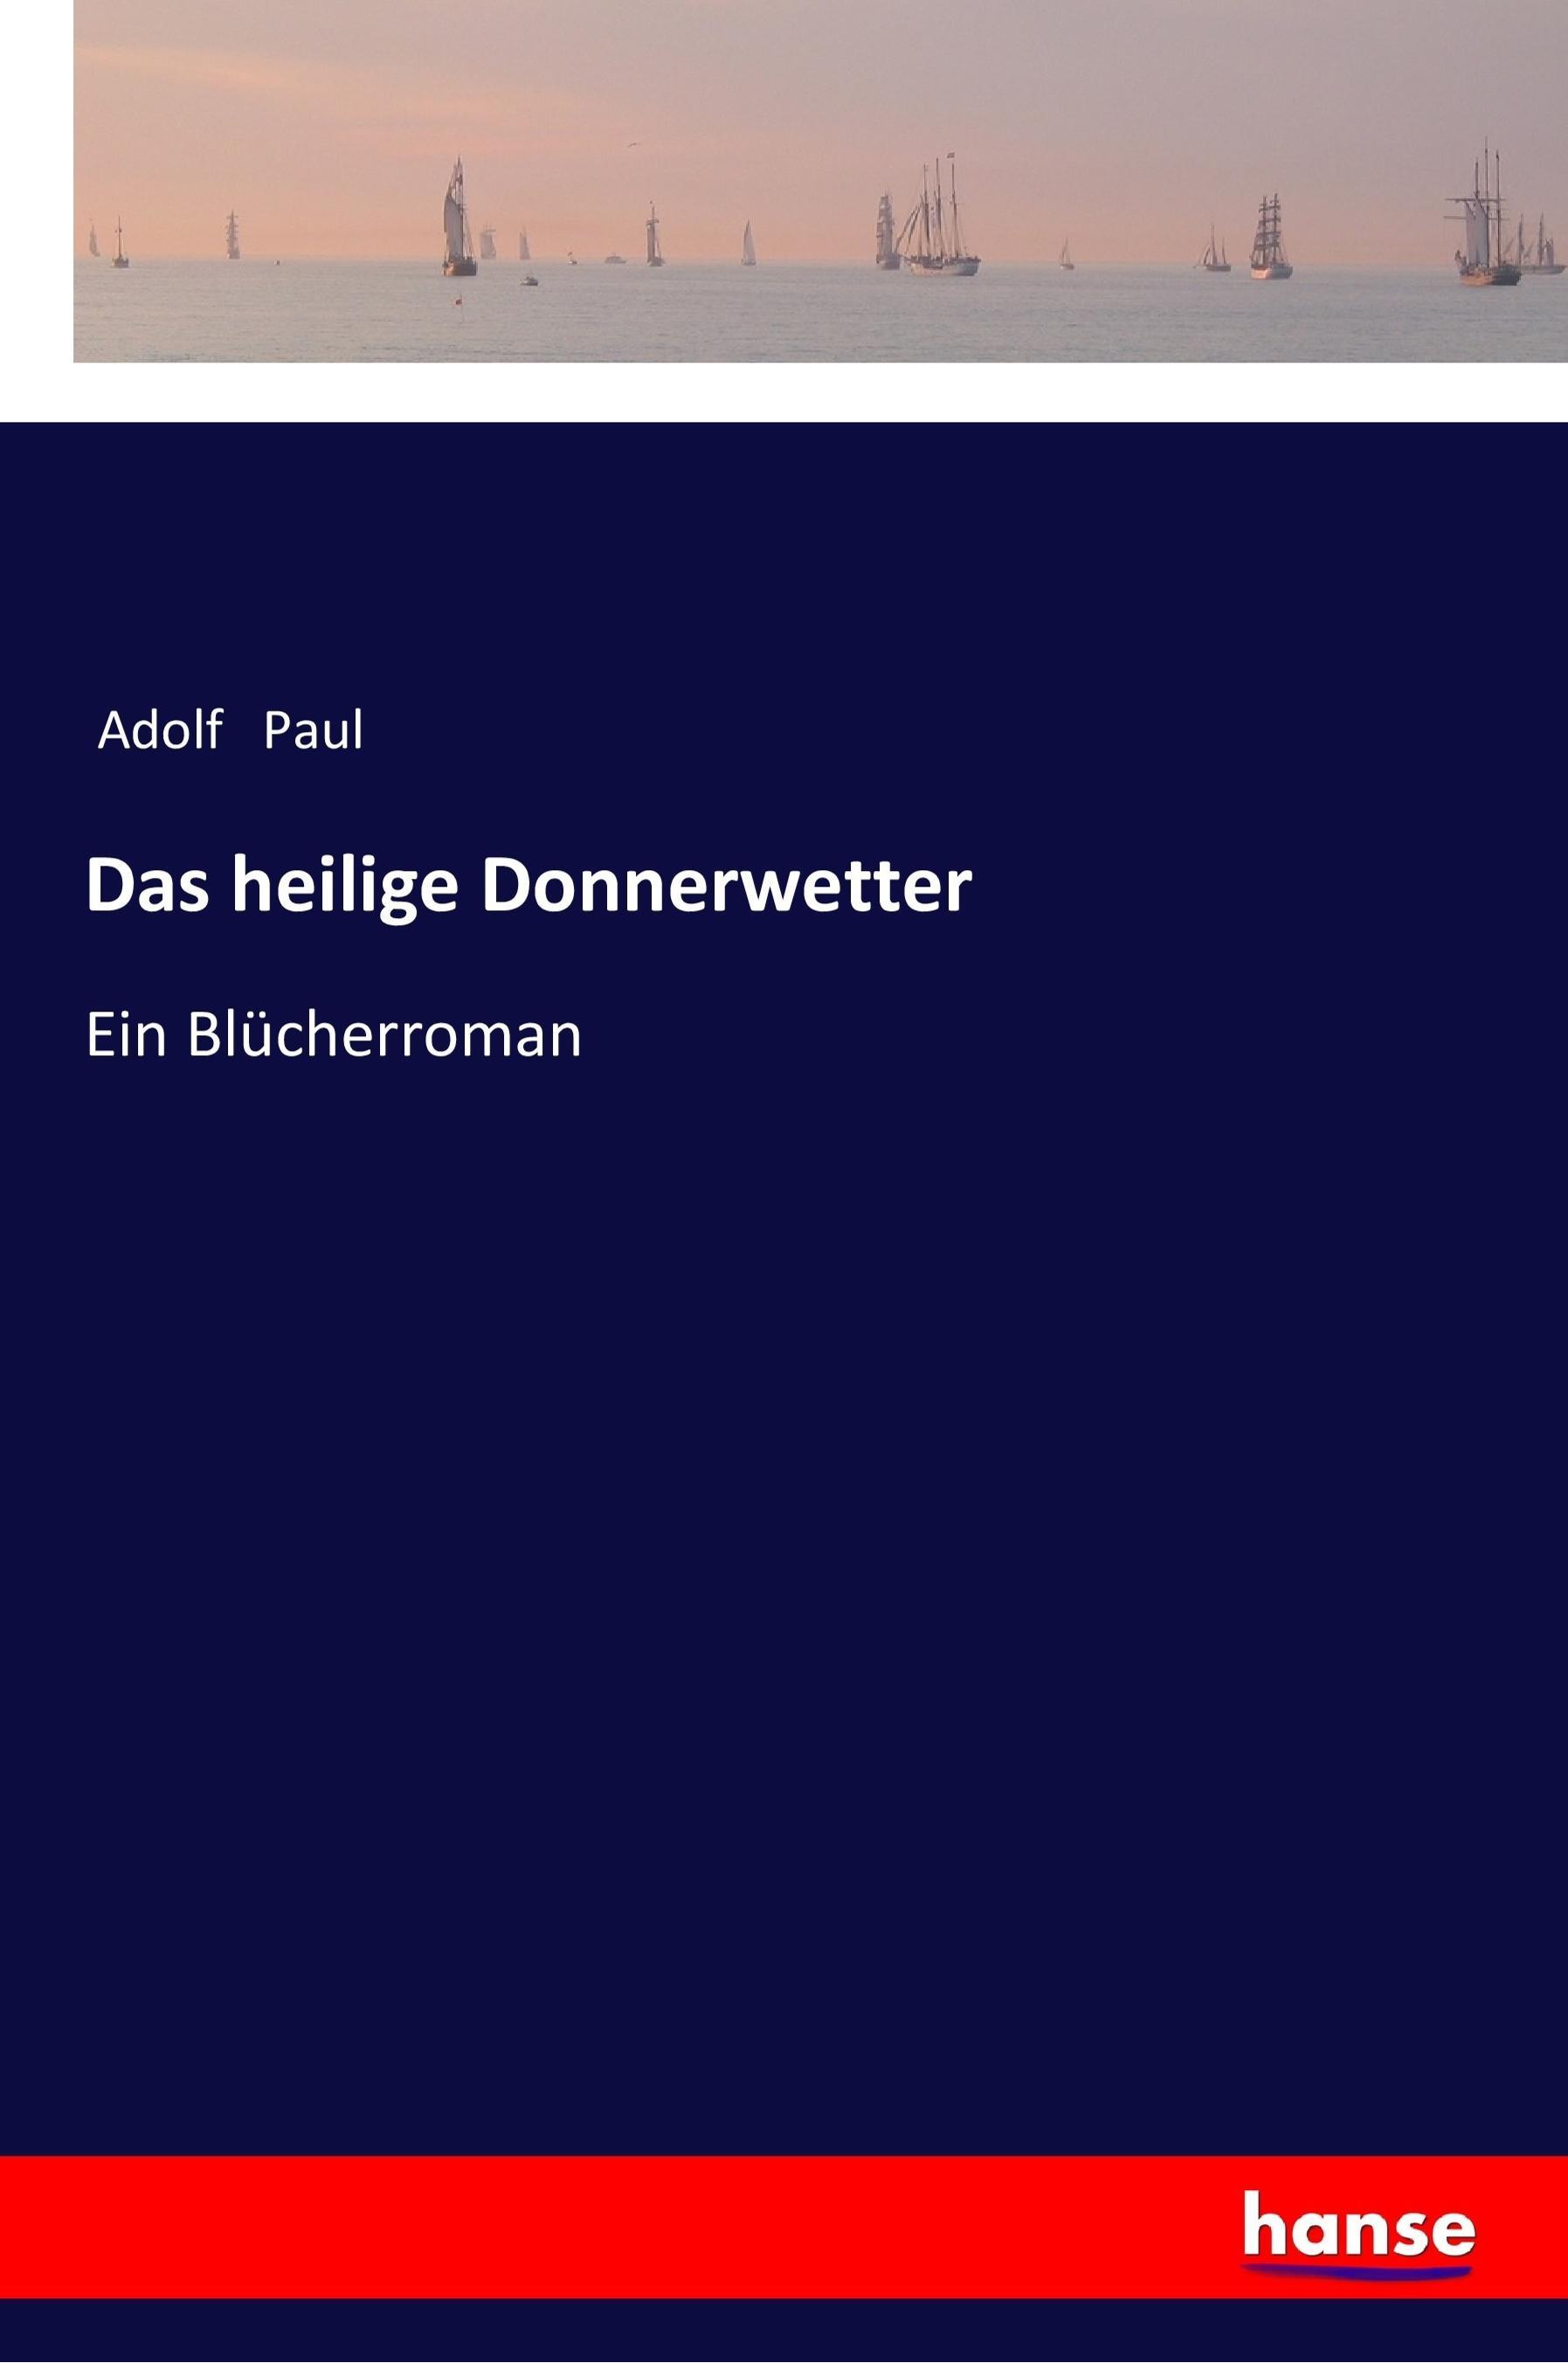 Das heilige Donnerwetter | Ein Blücherroman | Adolf Paul | Taschenbuch | Paperback | 568 S. | Deutsch | 2018 | hansebooks | EAN 9783337356019 - Paul, Adolf